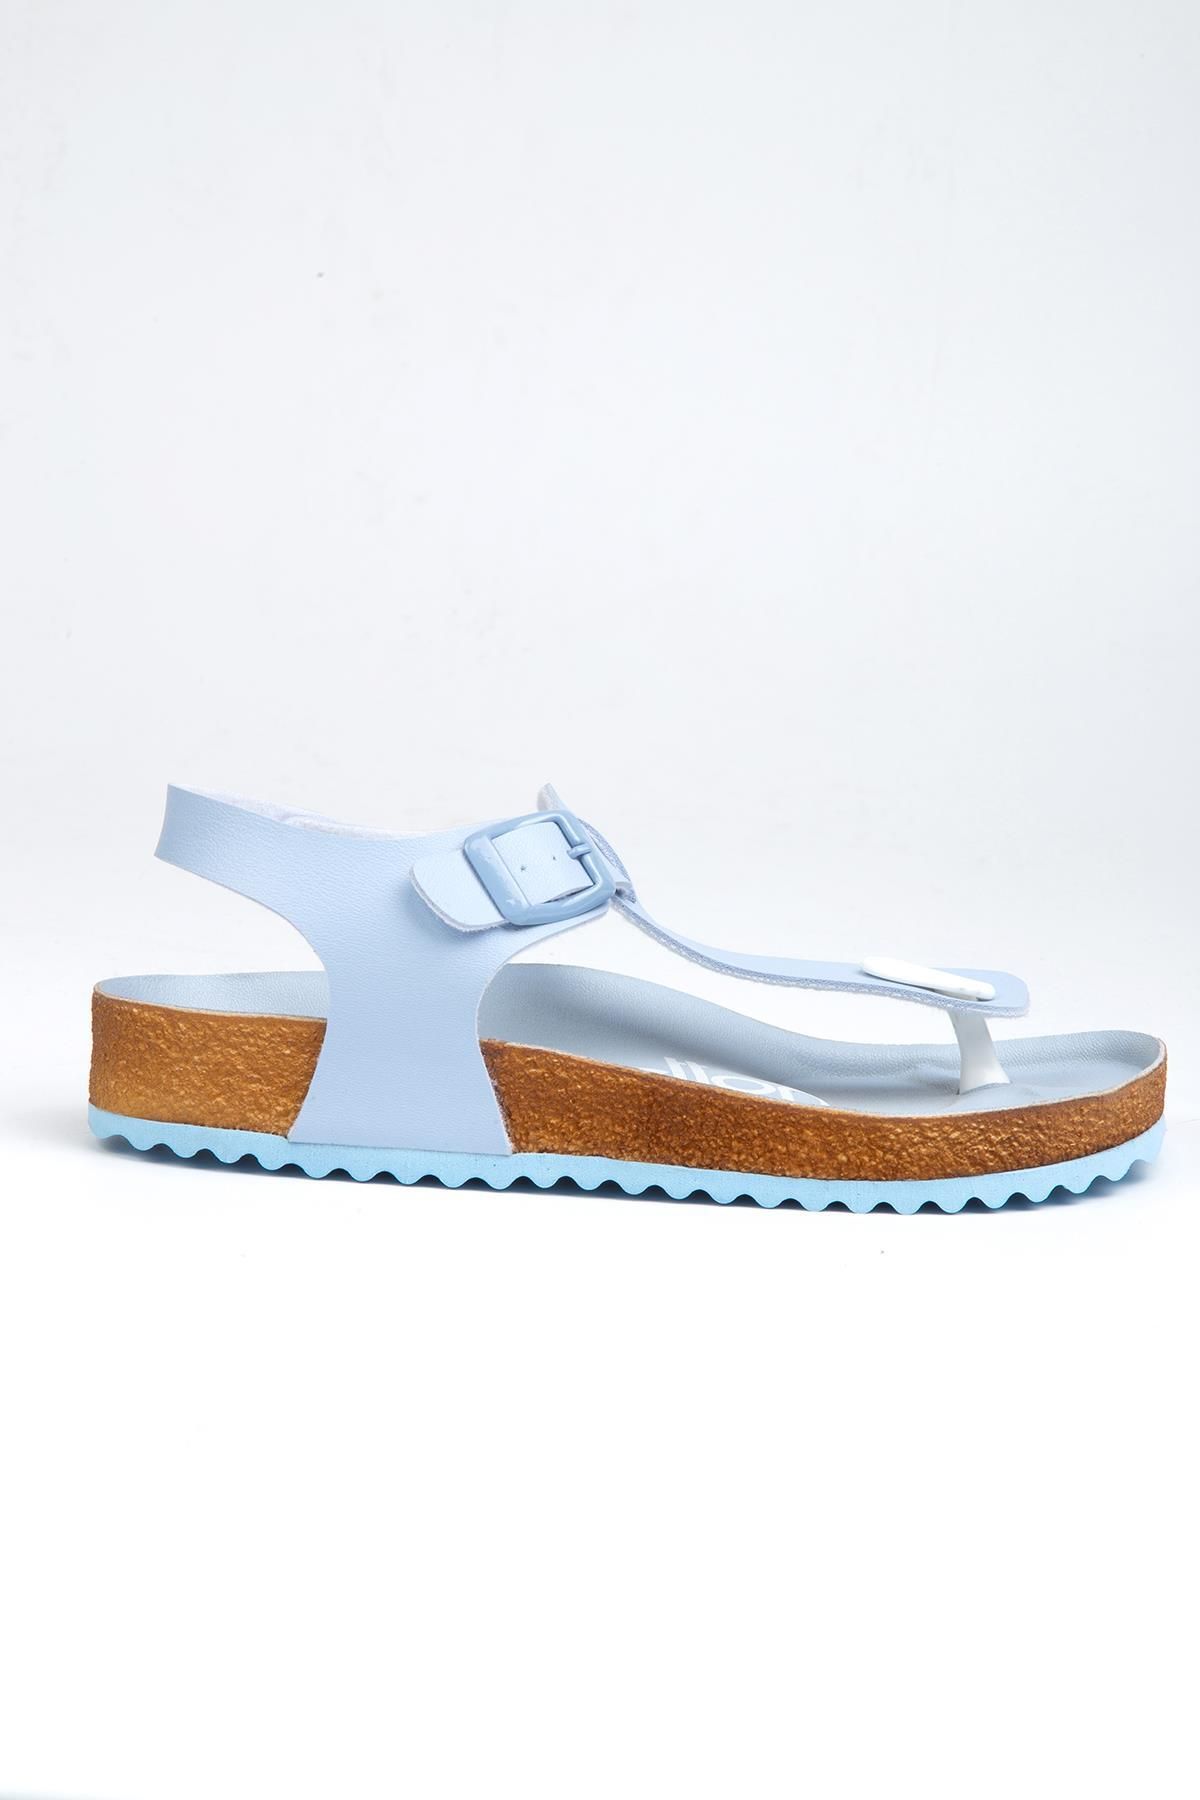 Benetton ® | BN-1220- 3489 Acik Mavi - Kadın Sandalet